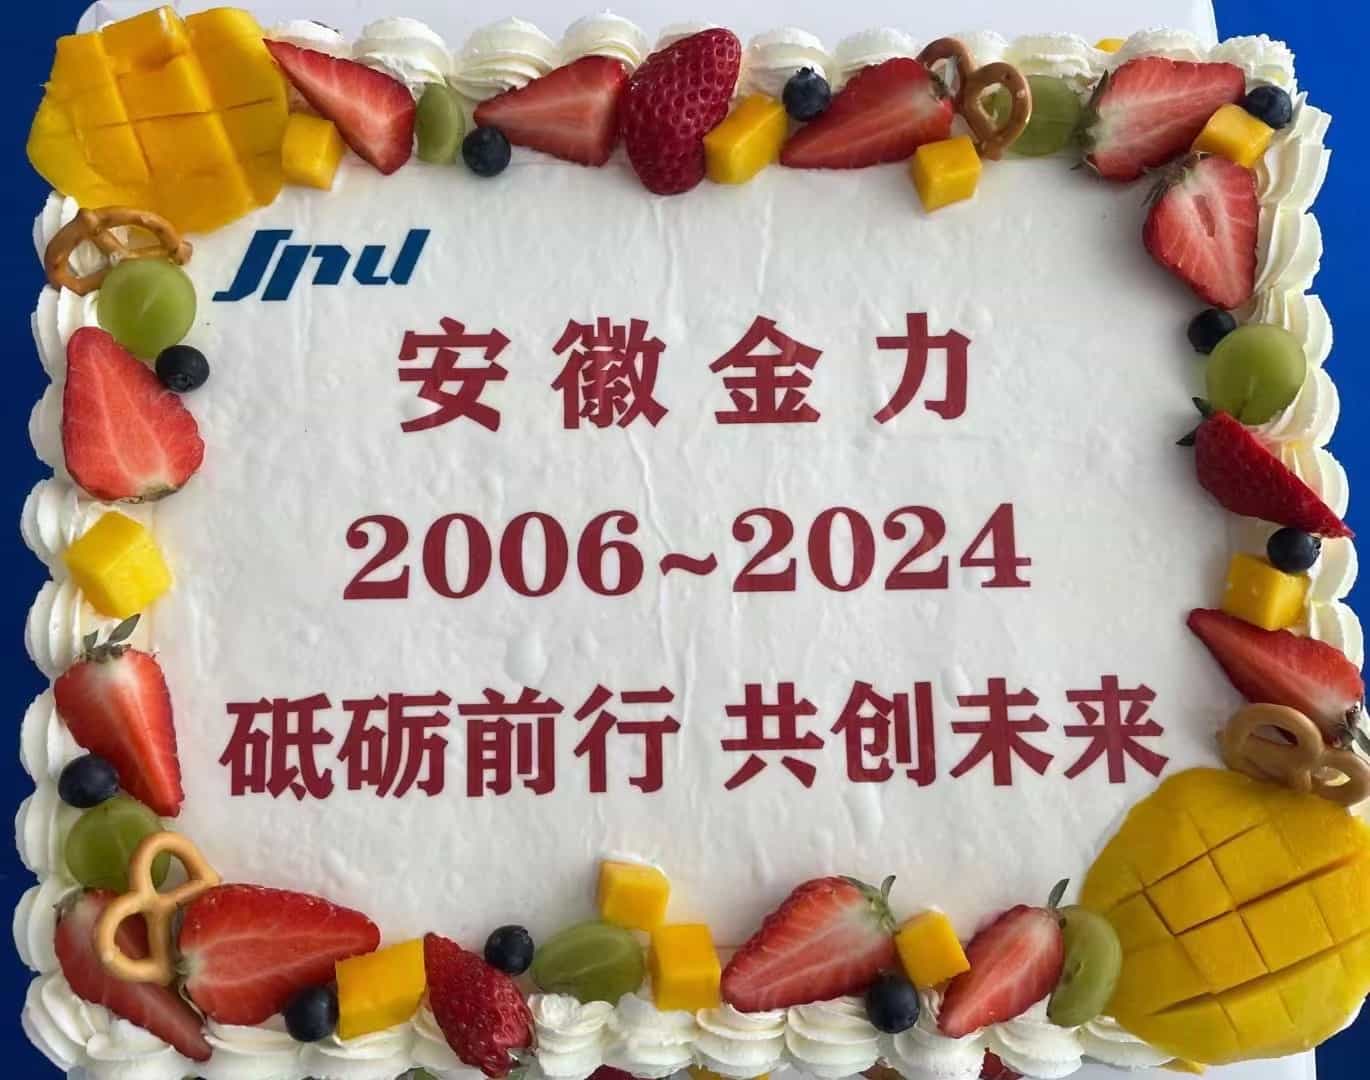 Happy 18th Anniversary - Anhui Jinli